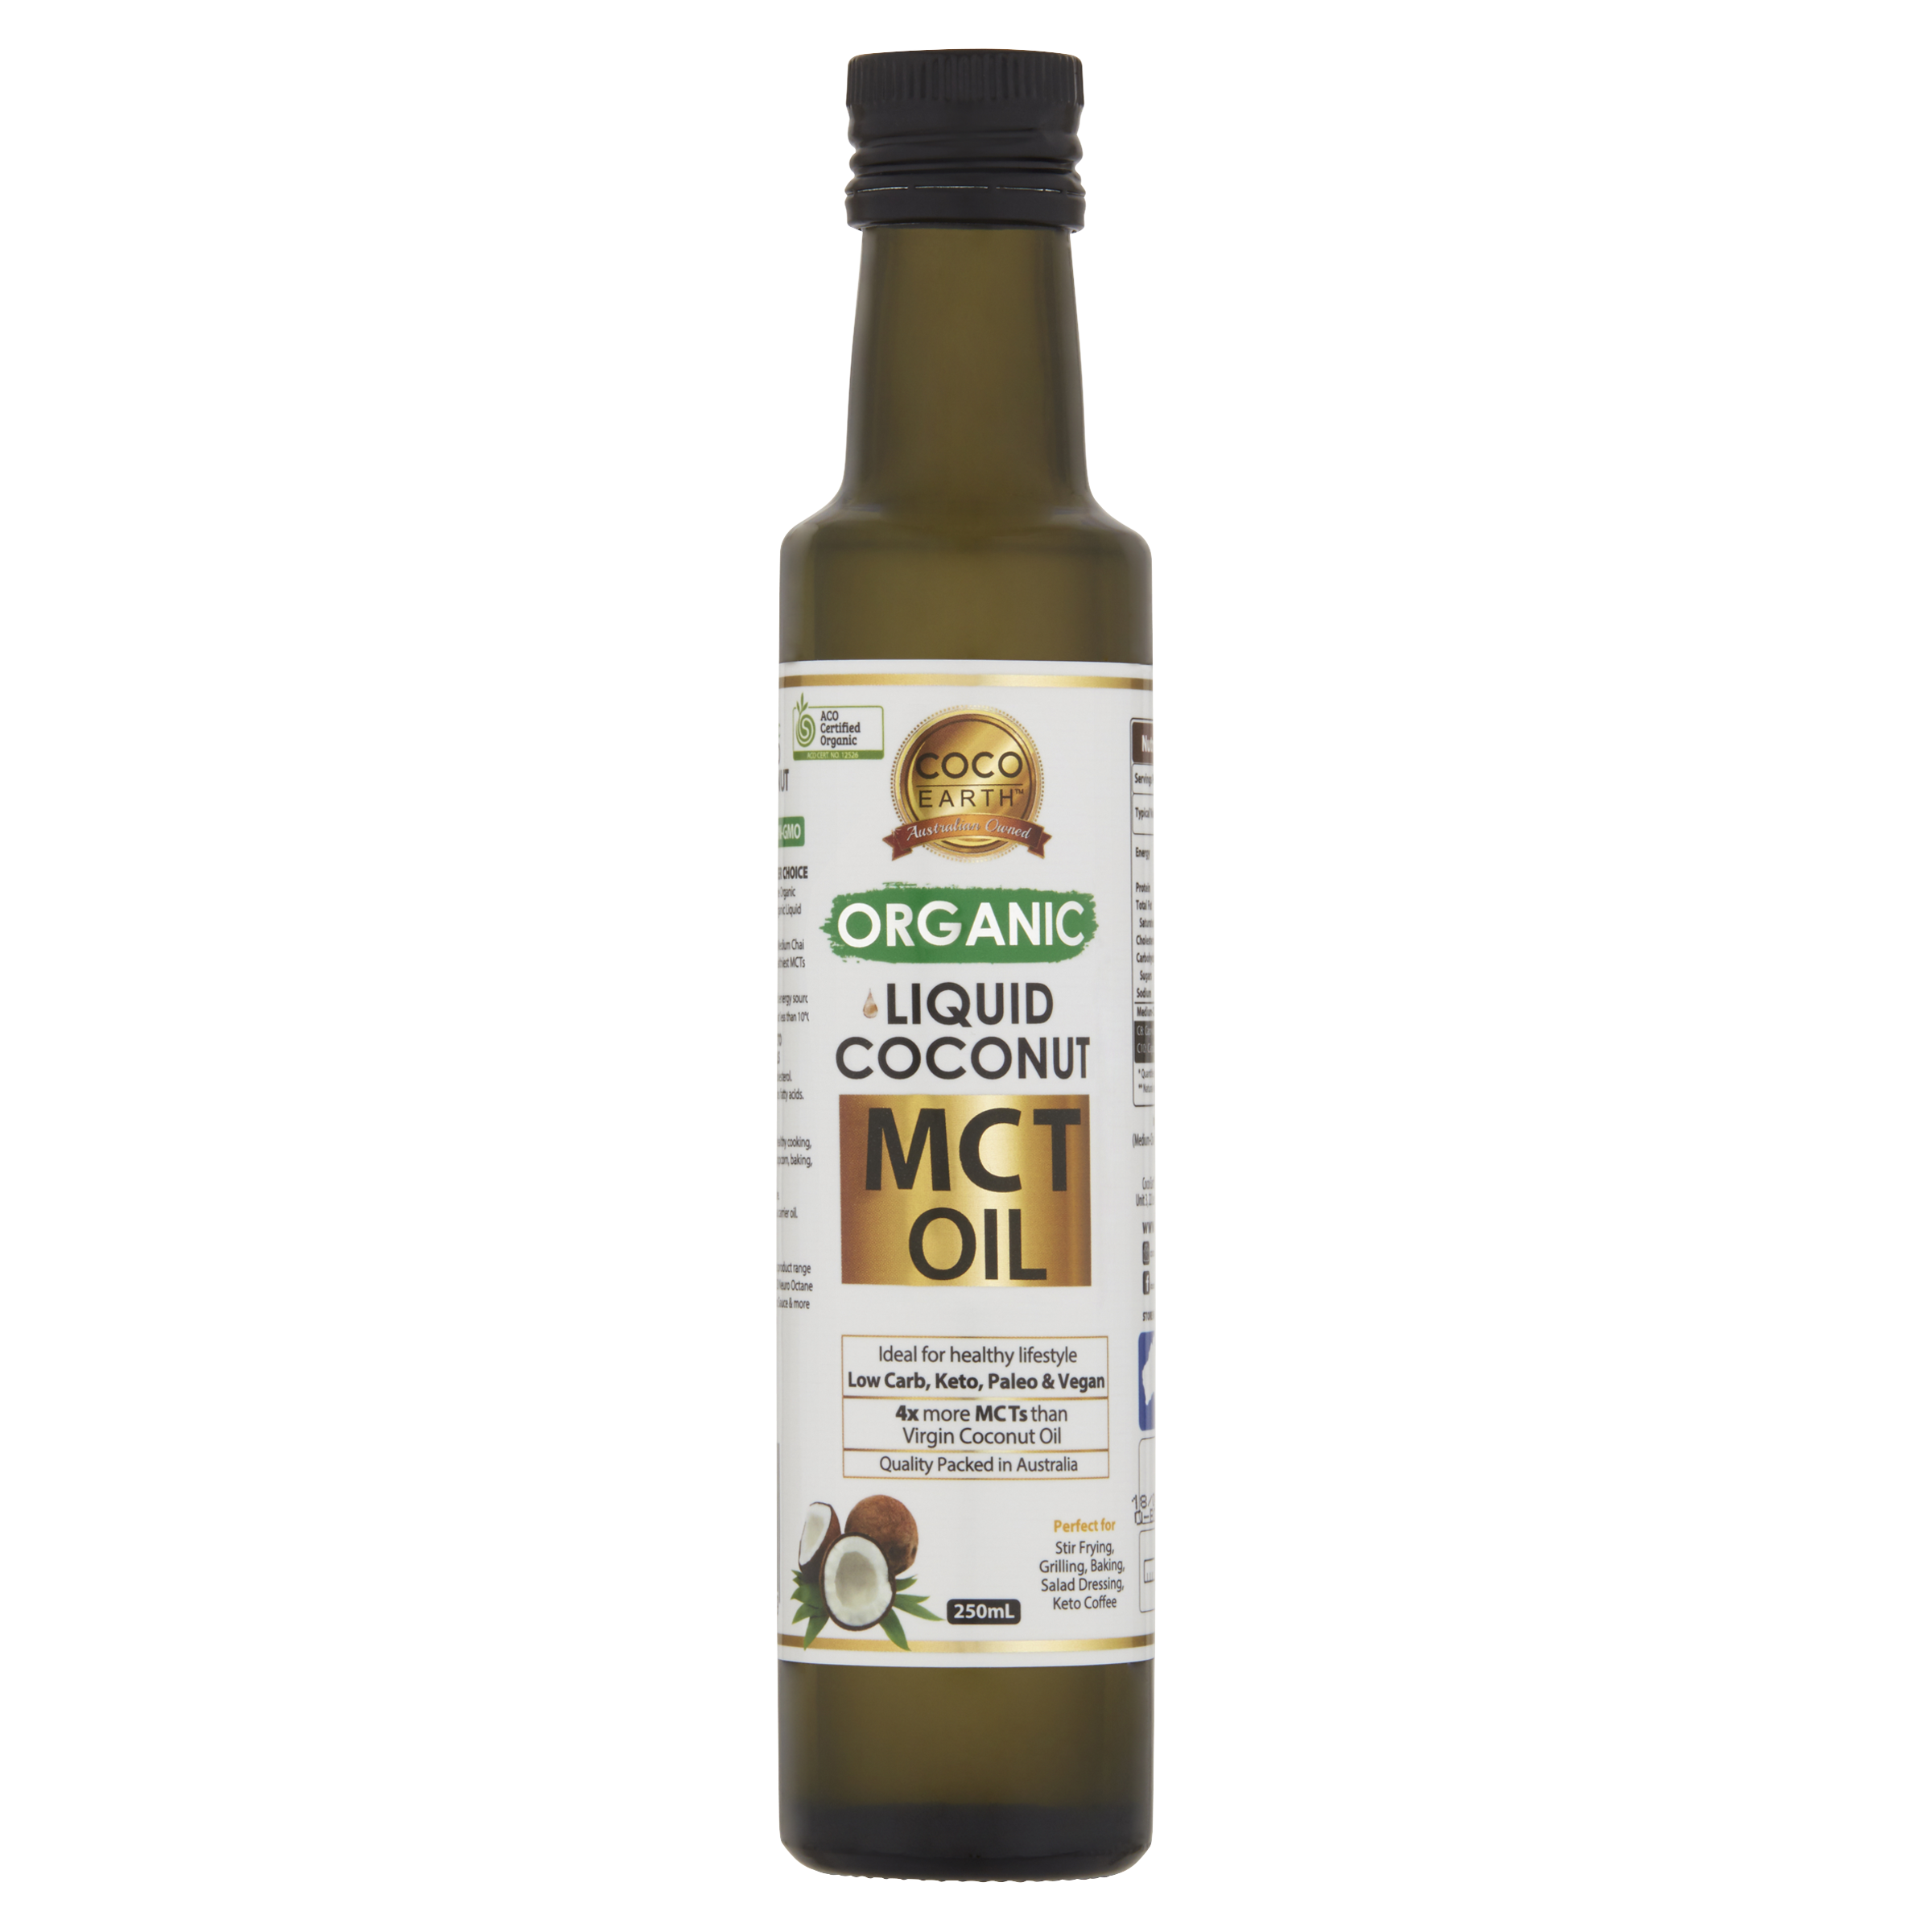 Organic Liquid Coconut MCT Oil